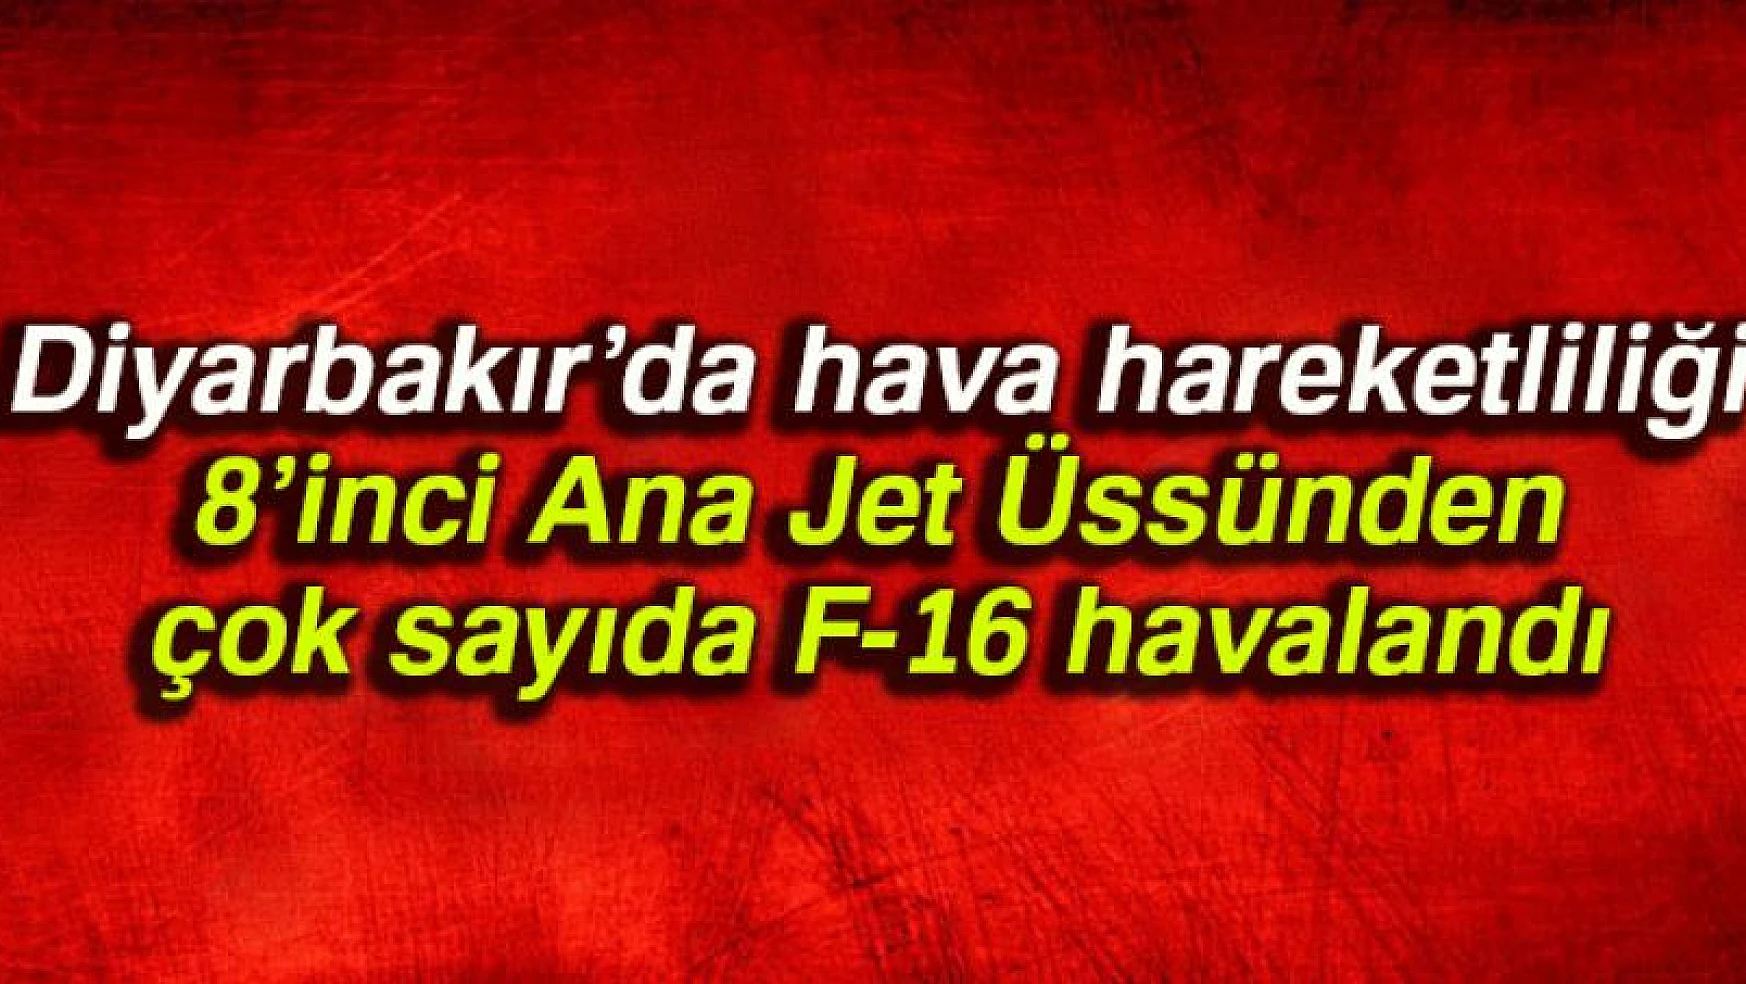 Diyarbakır'da hava hareketliliği: 8'inci Ana Jet Üssünden çok sayıda F-16 havalandı